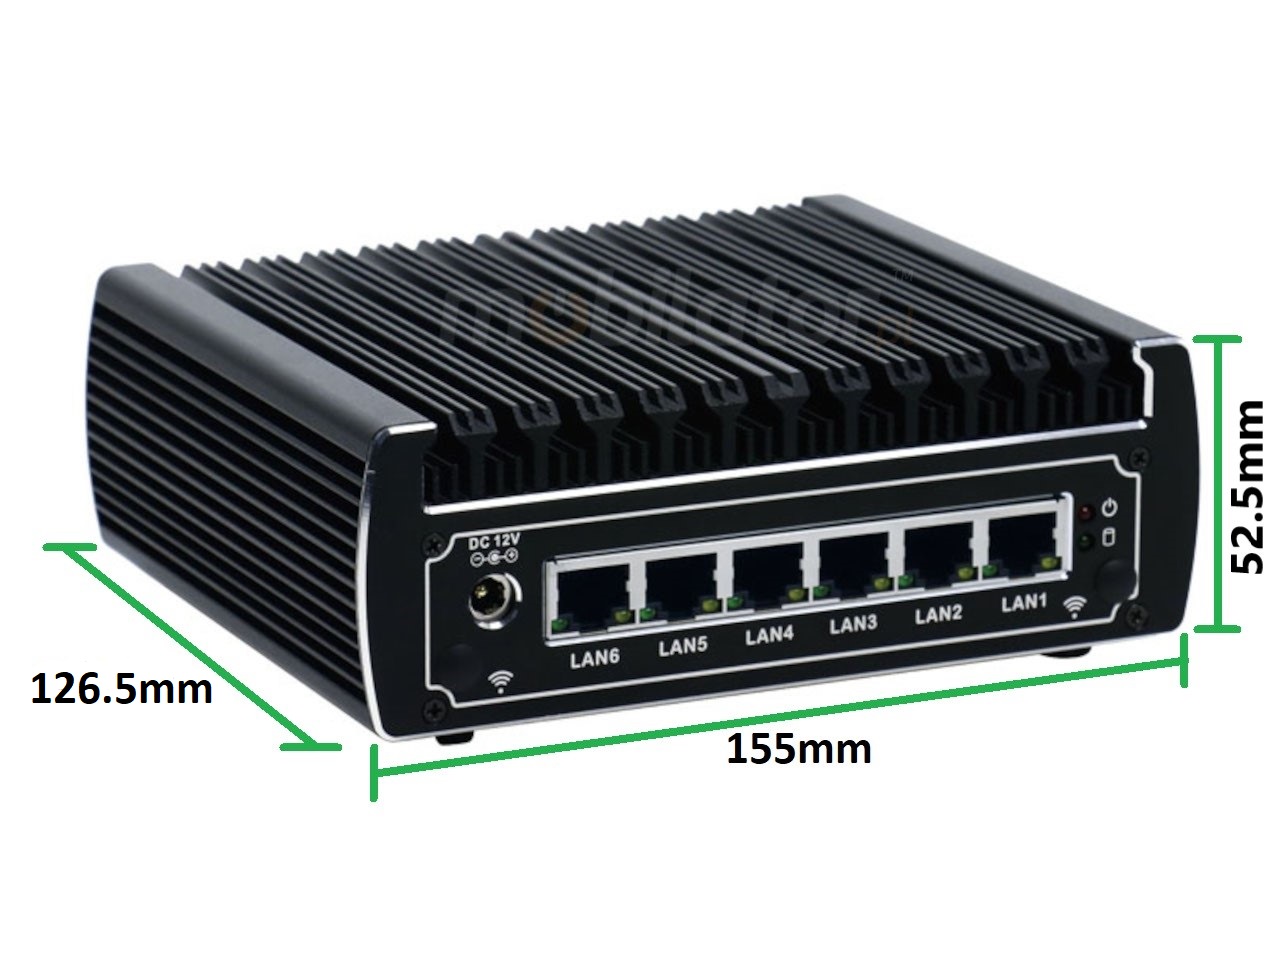   IBOX N133  v.12, wymiary SSD DDR4 WIFI BLUETOOTH , przemysowy, may, szybki, niezawodny, fanless, industrial, small, LAN, INTEL i3